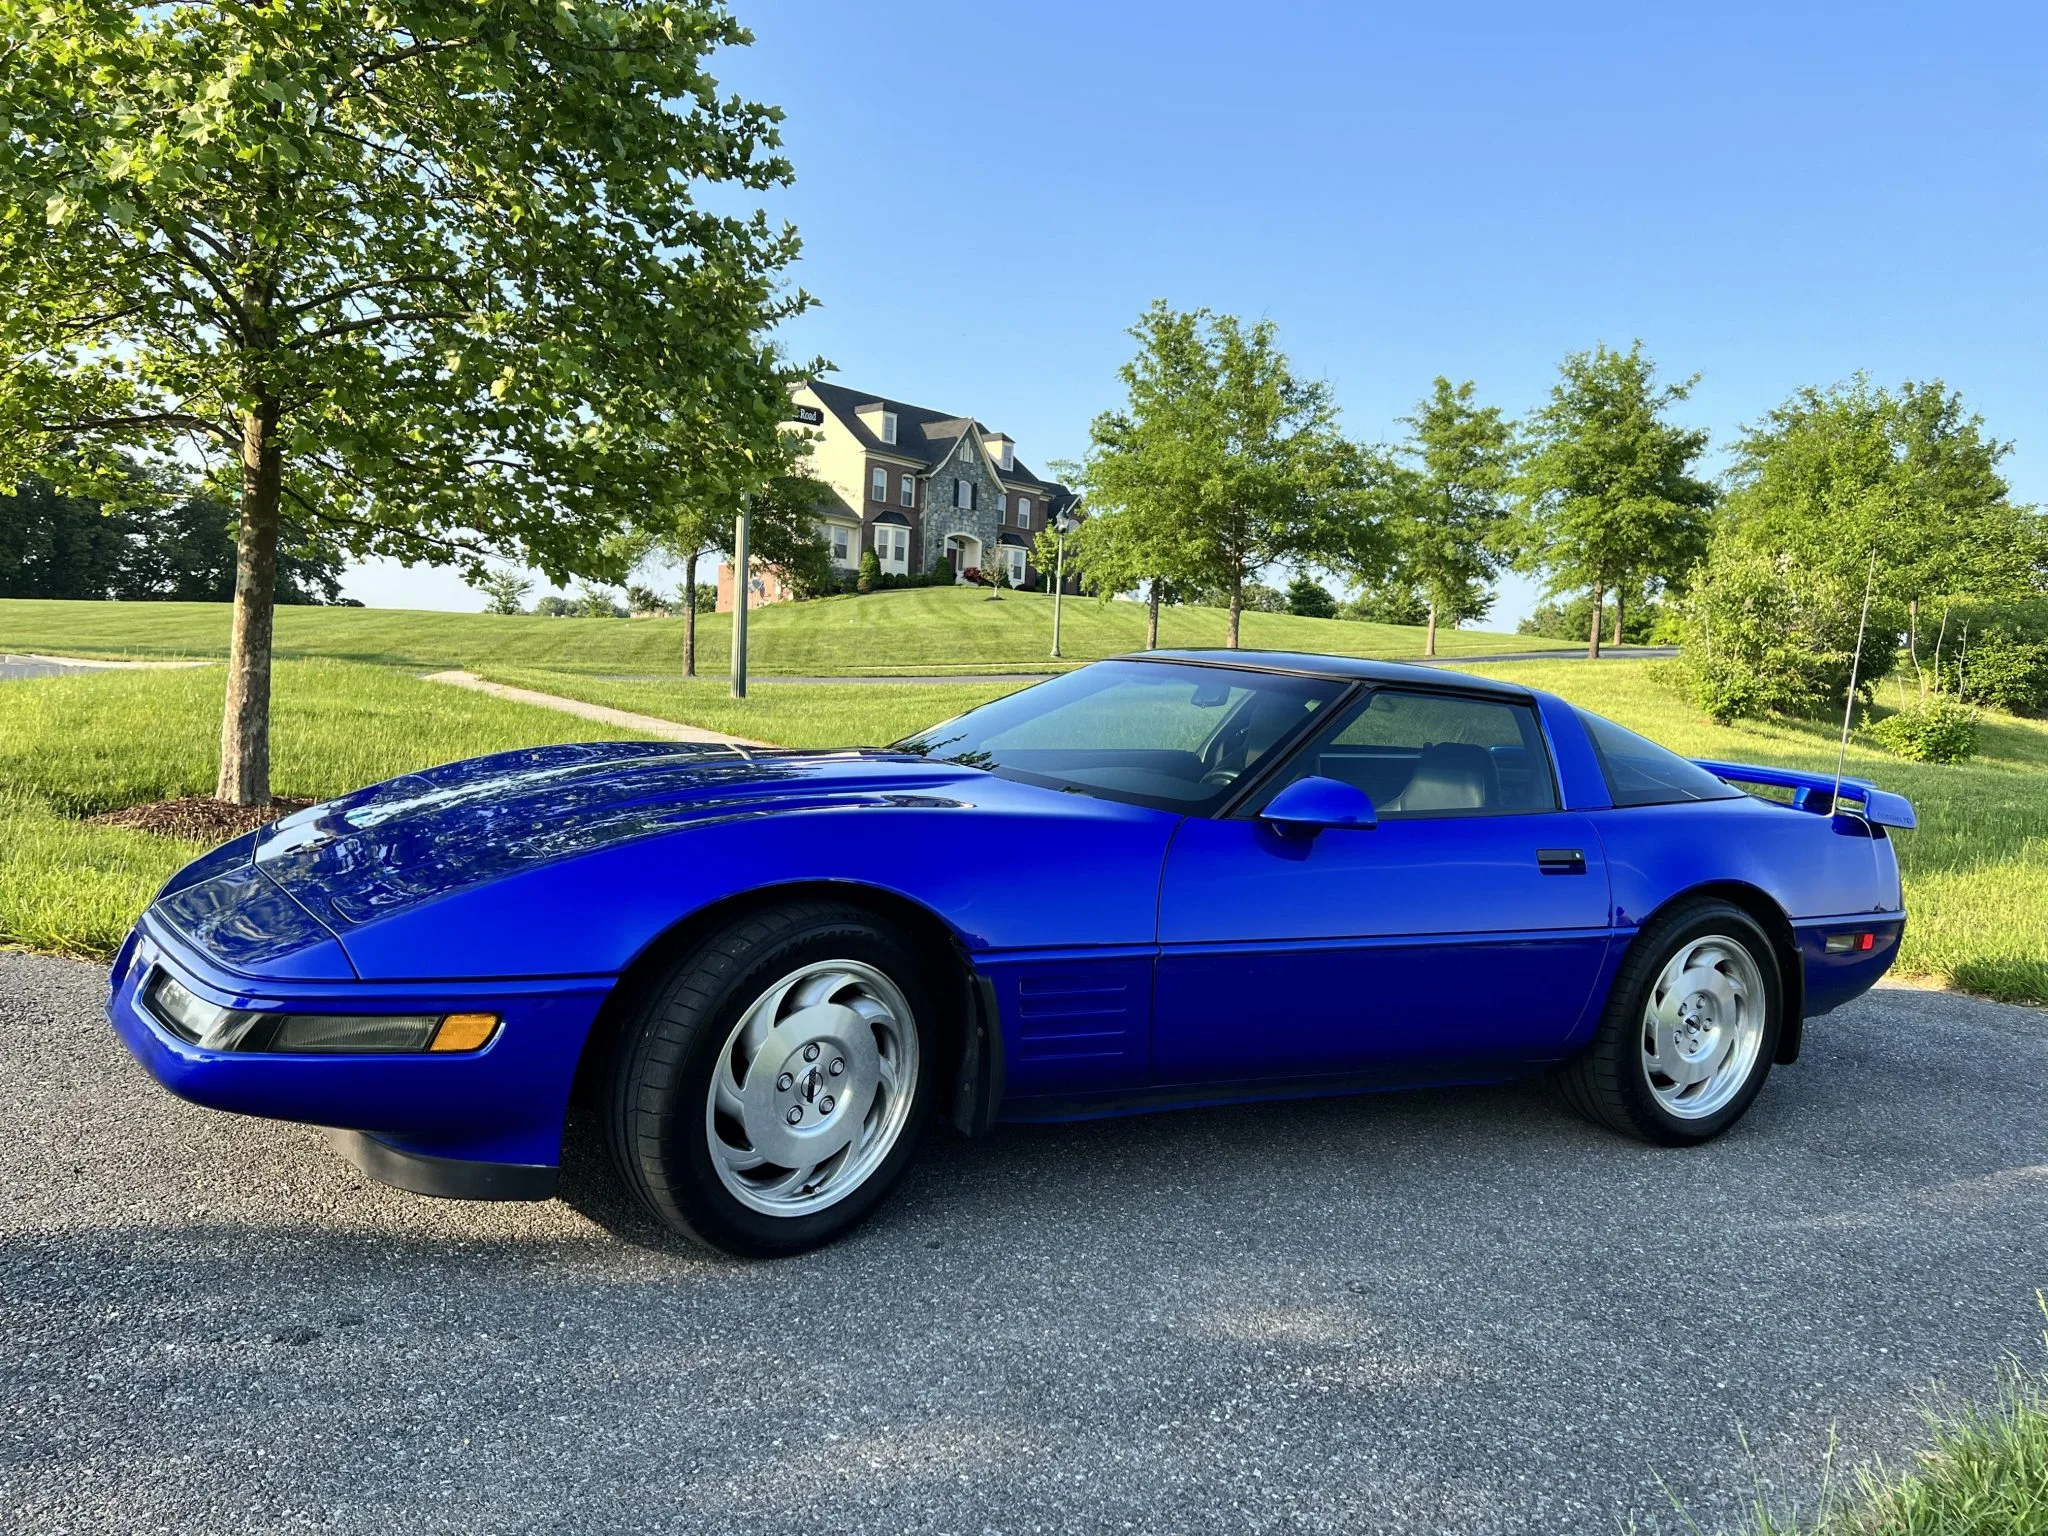 Corvette Of The Day: 1994 Chevrolet Corvette